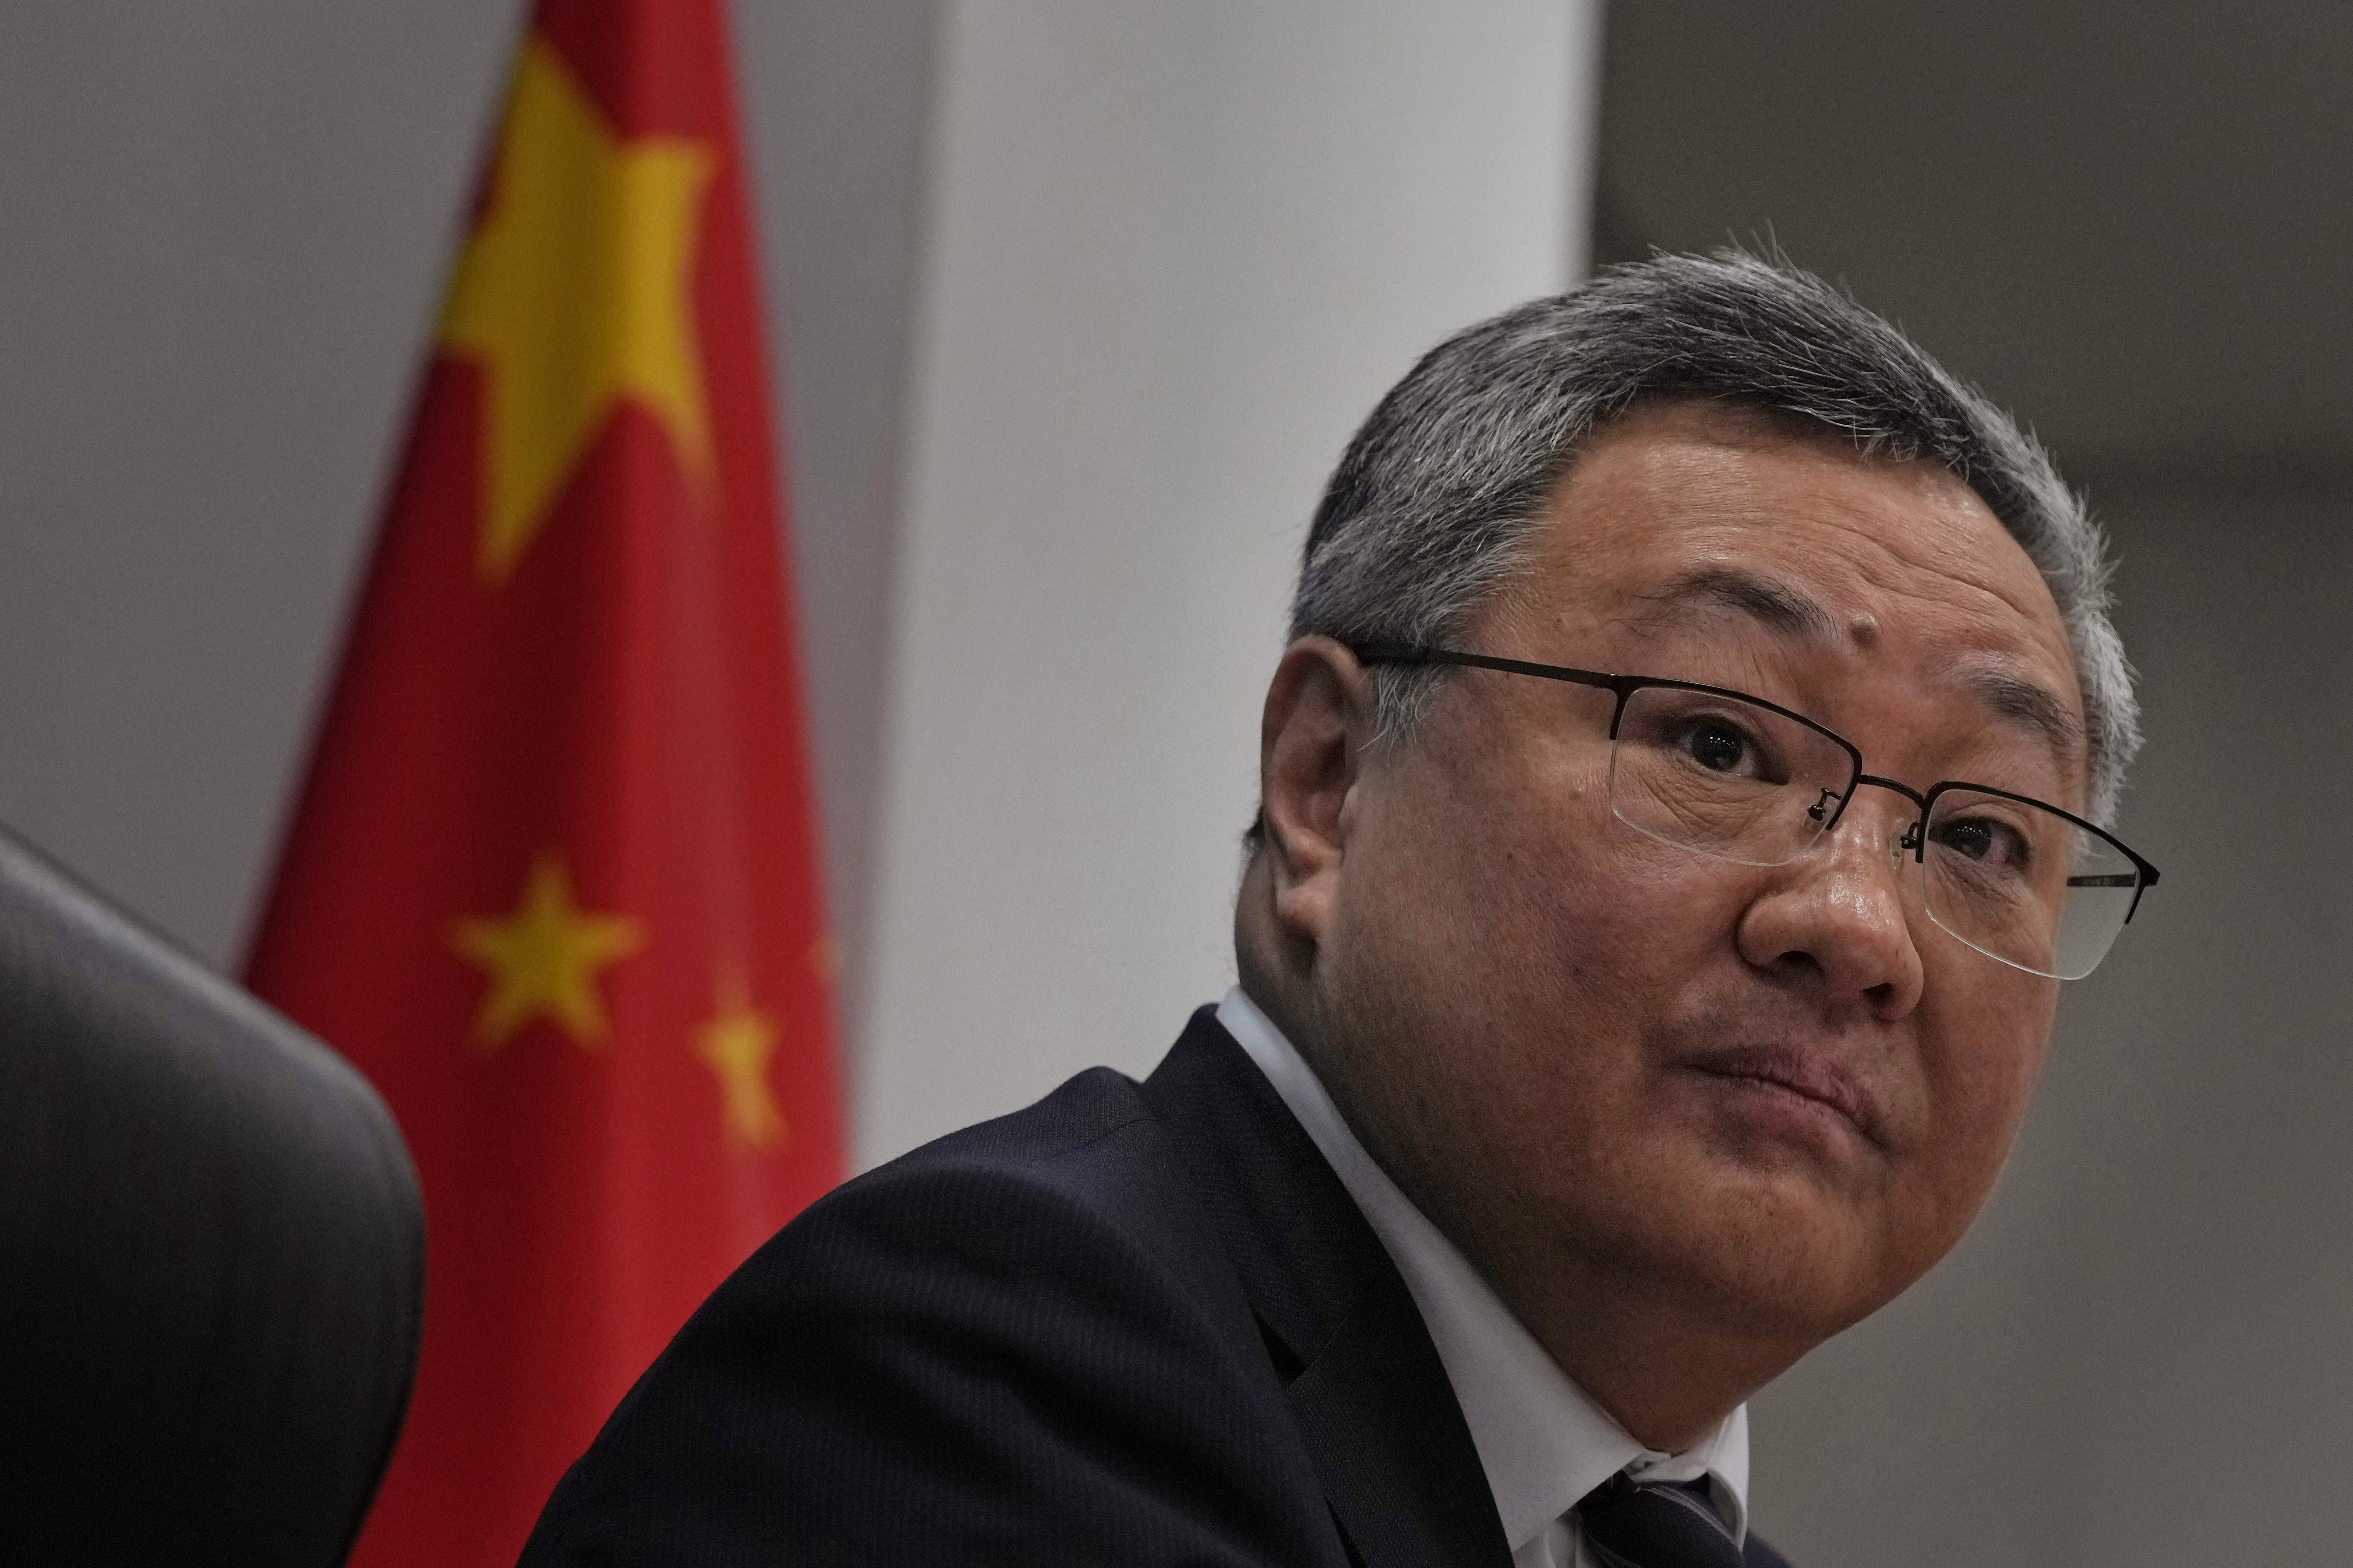 傅聪已正式接任中国大陆驻联合国代表一职。(美联社)